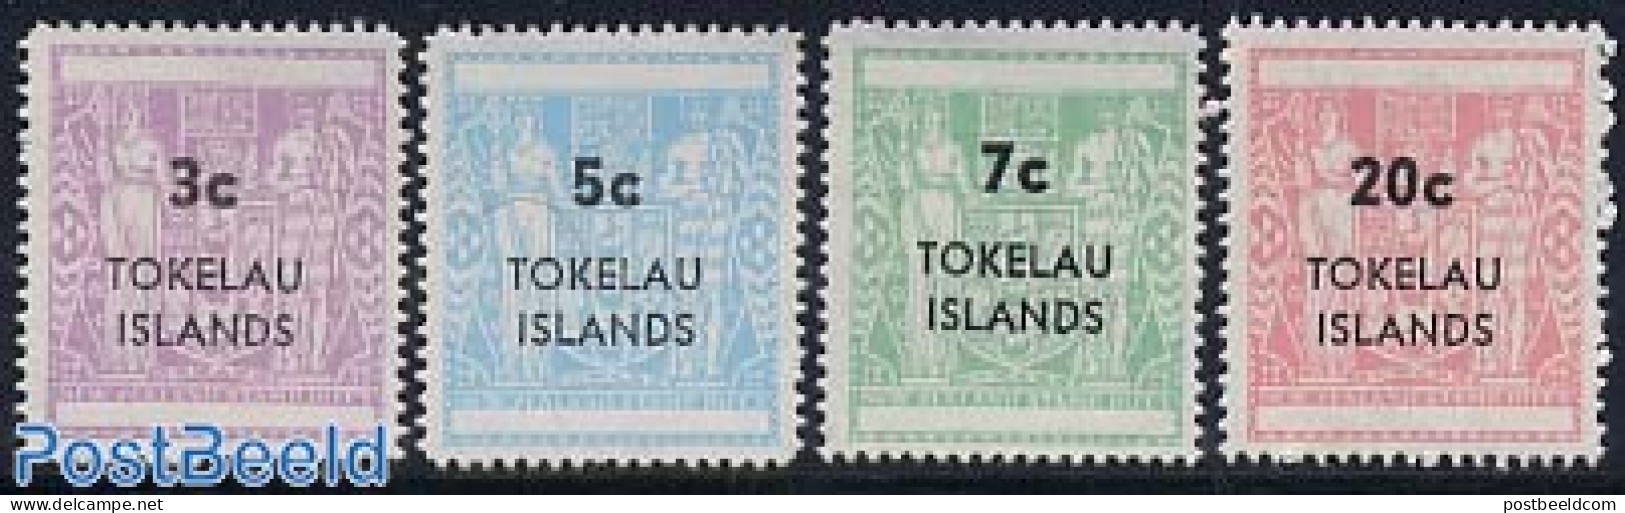 Tokelau Islands 1967 Stamp Duty 4v, Mint NH - Tokelau